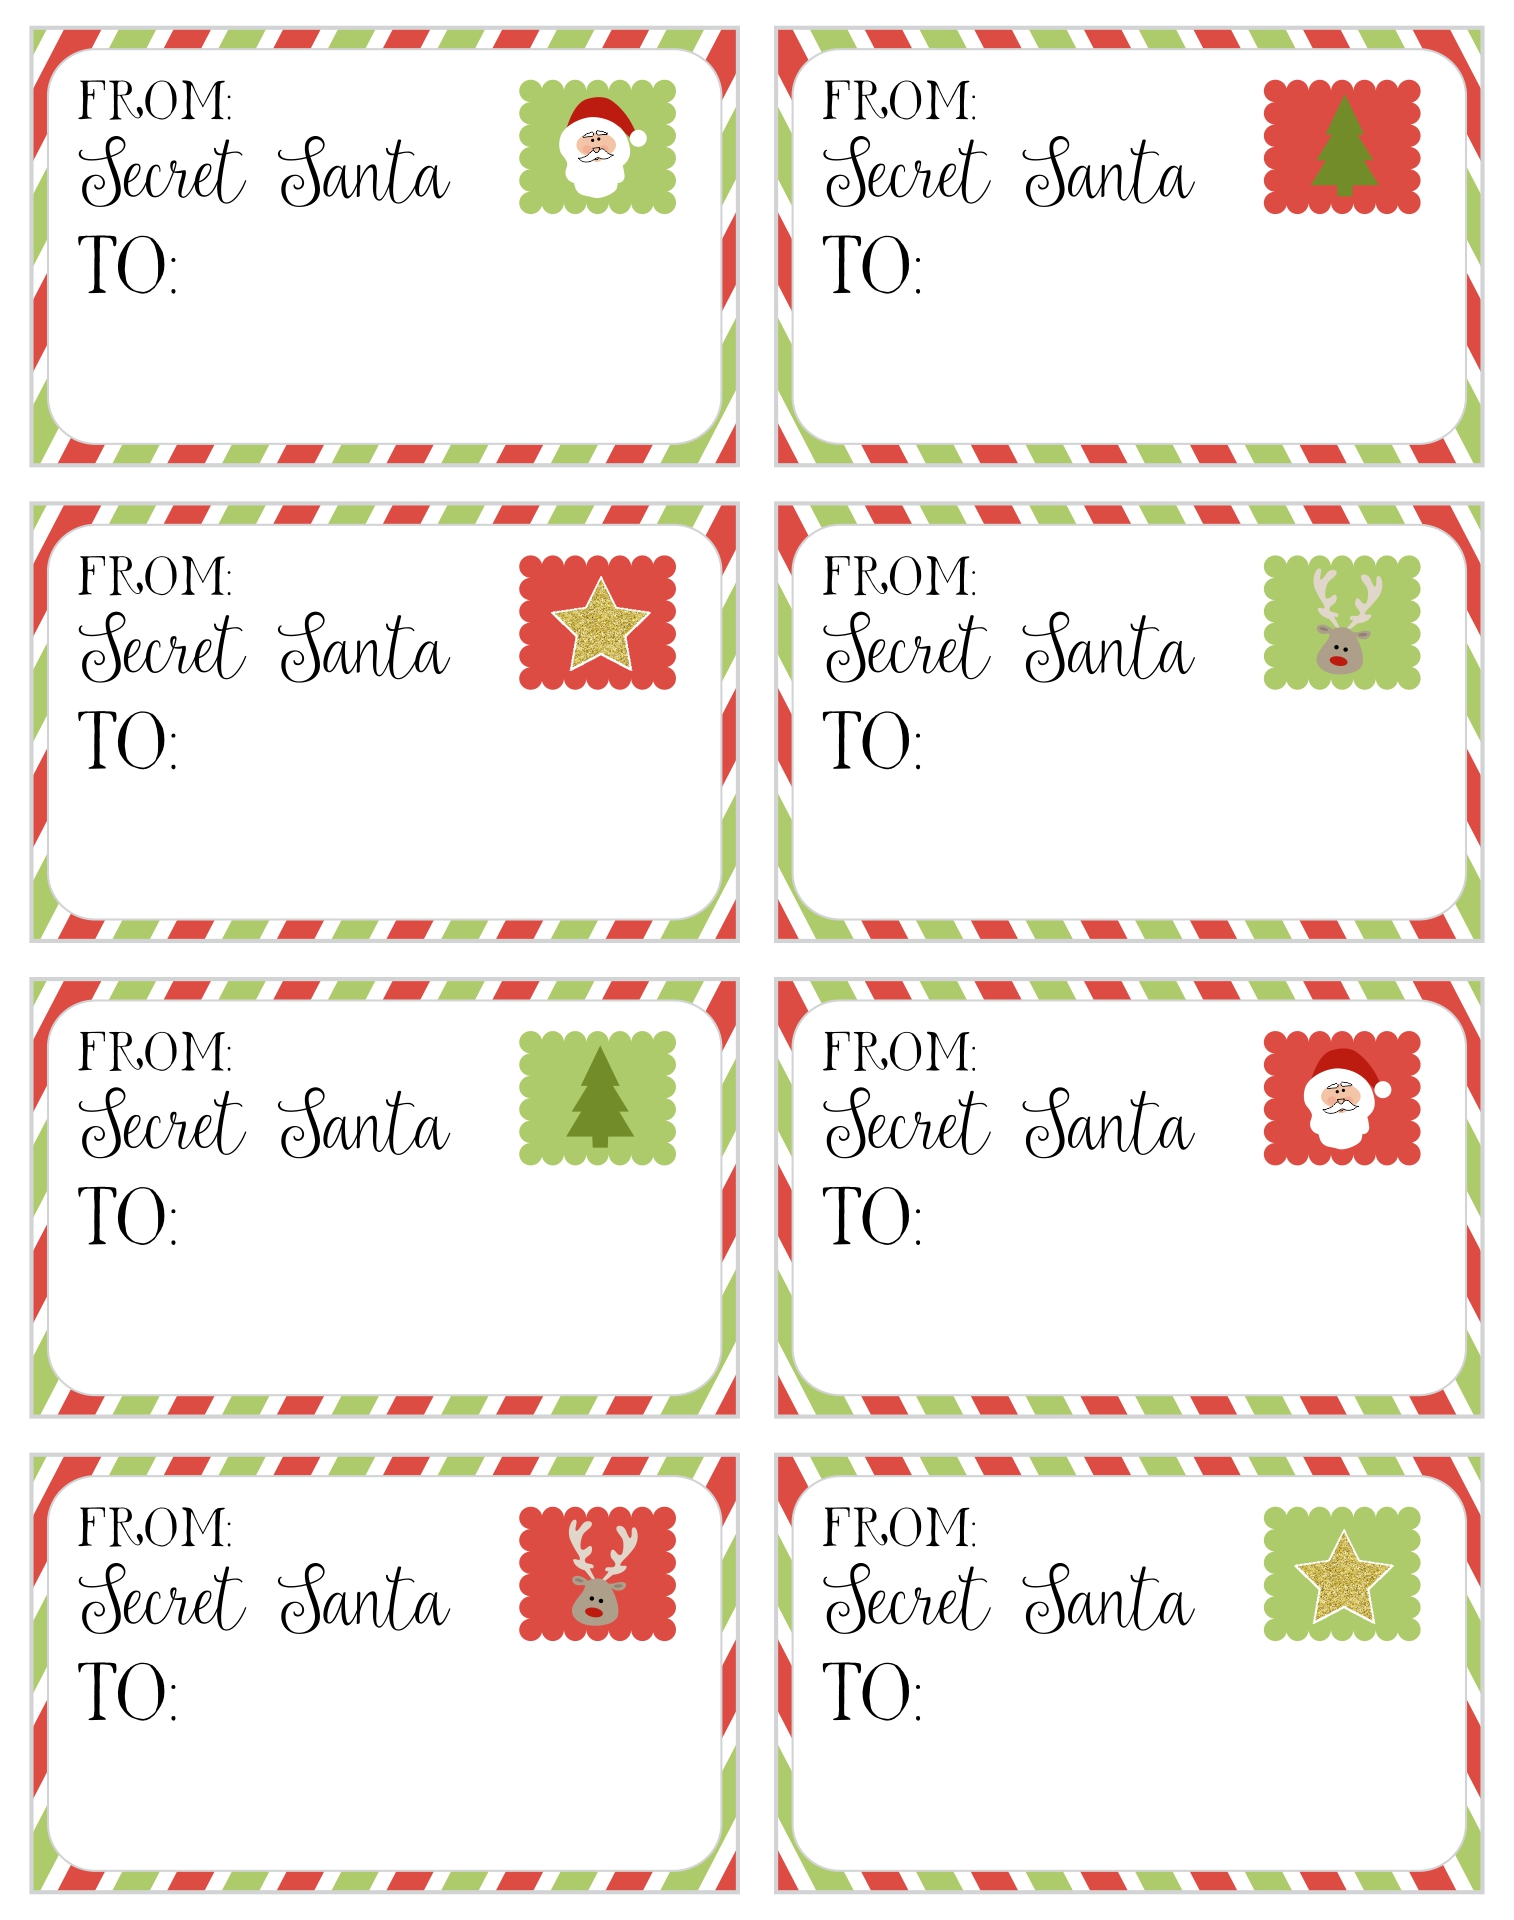 4 Best Images of Printable Secret Santa Cards Printable Secret Santa